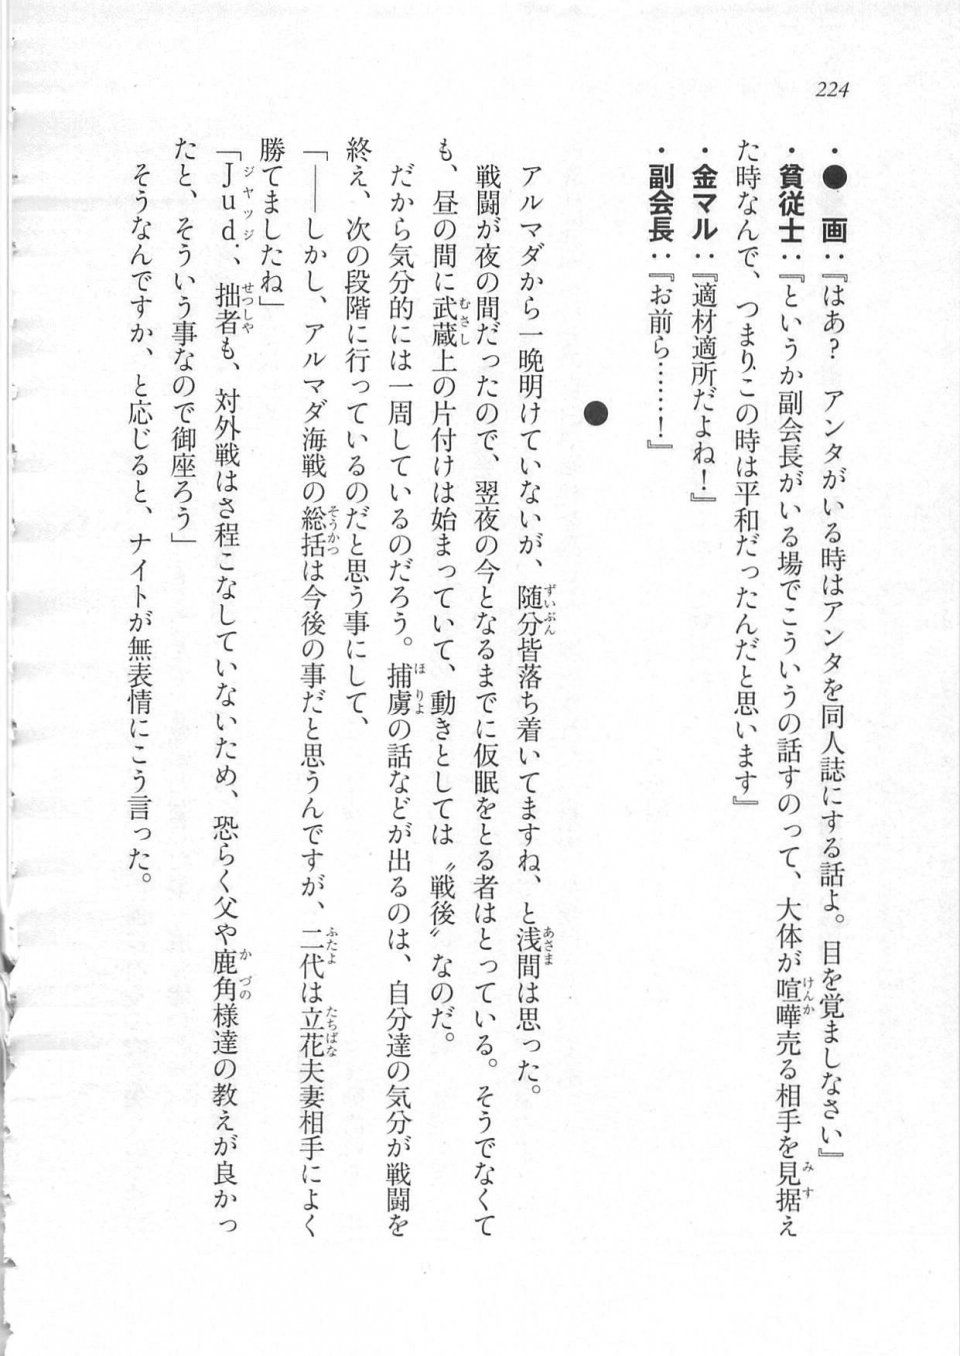 Kyoukai Senjou no Horizon LN Sidestory Vol 3 - Photo #228